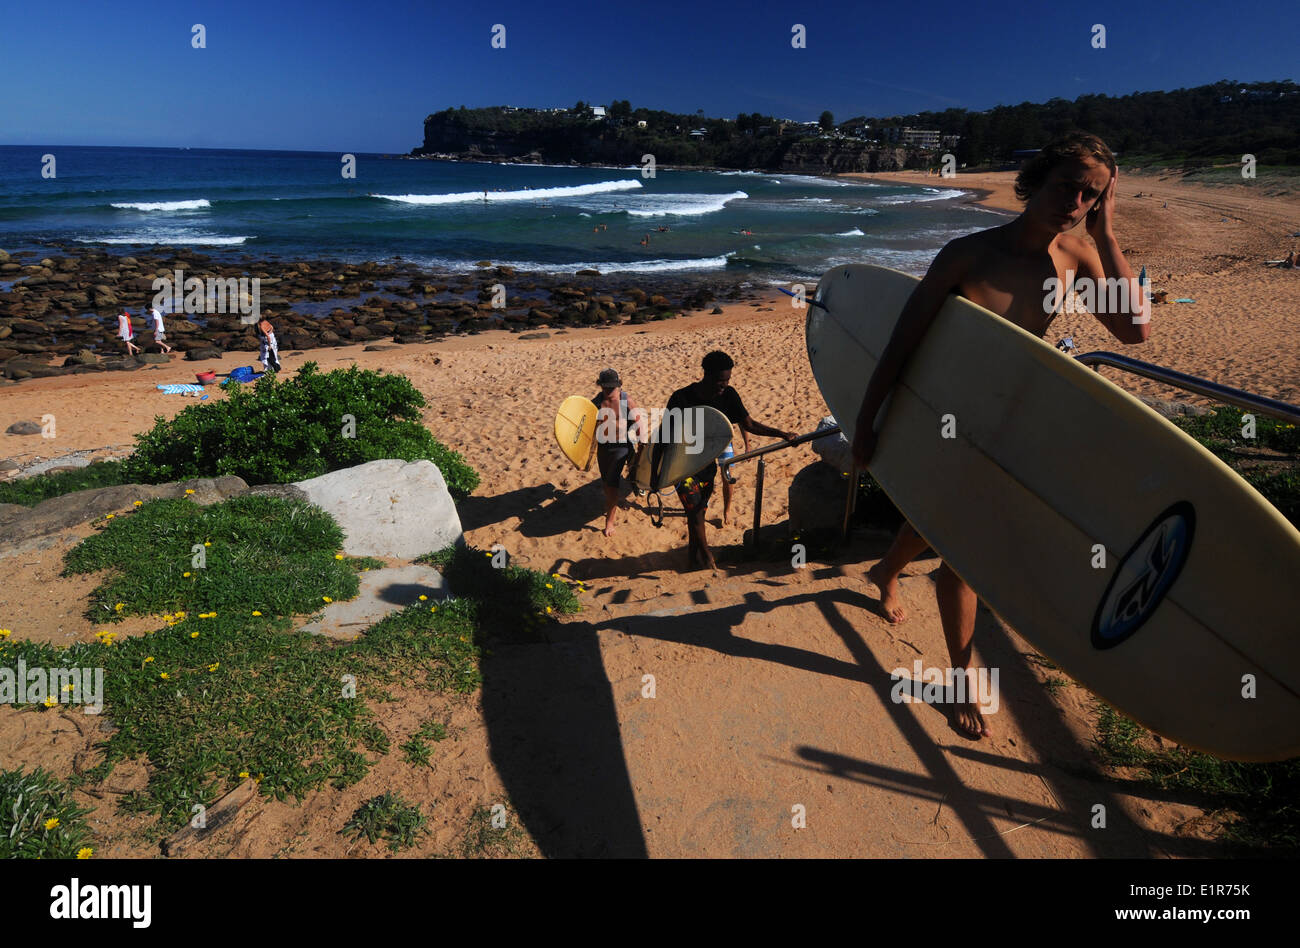 Surfers Beach, Avalon laissant plages du nord de Sydney, NSW, Australie. Pas de monsieur ou PR Banque D'Images